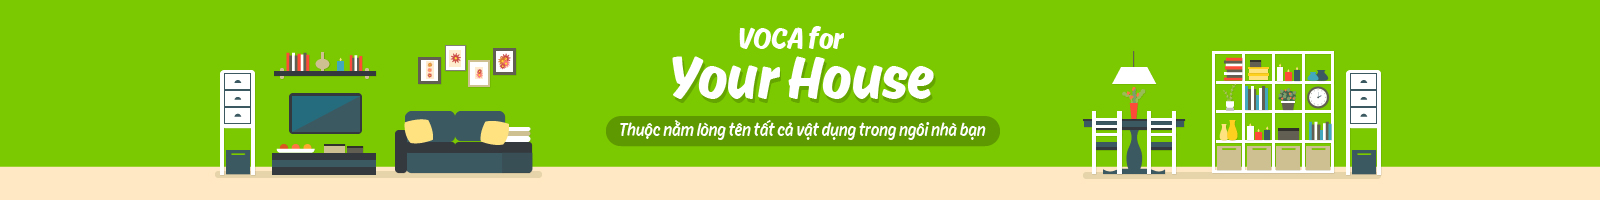 ENGLISH 4U NO.1 - YOUR HOUSE